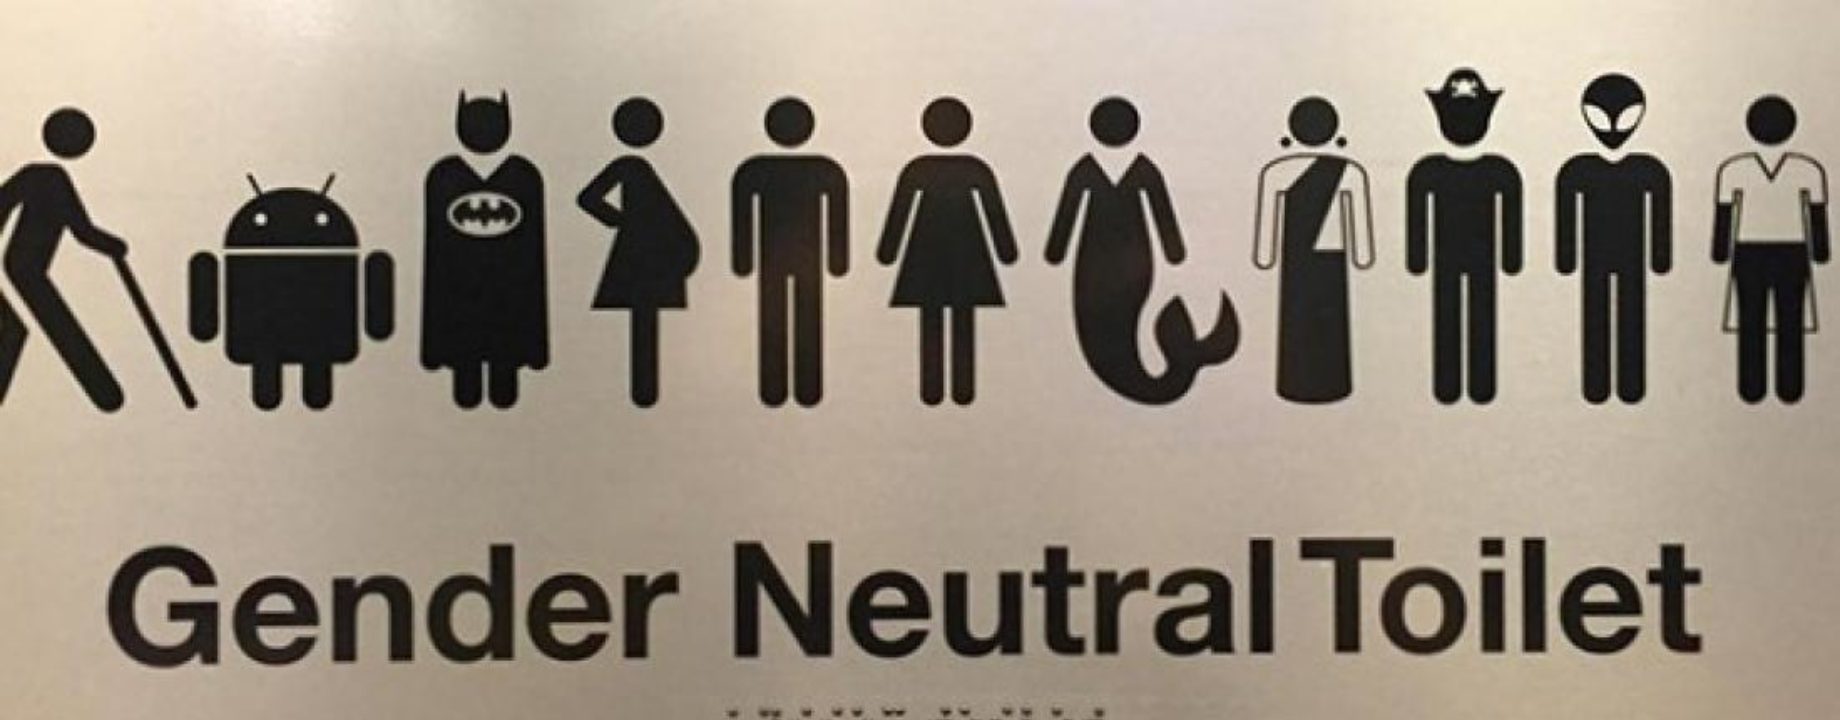 Google gender neutral bathroom sign 1475248567 0